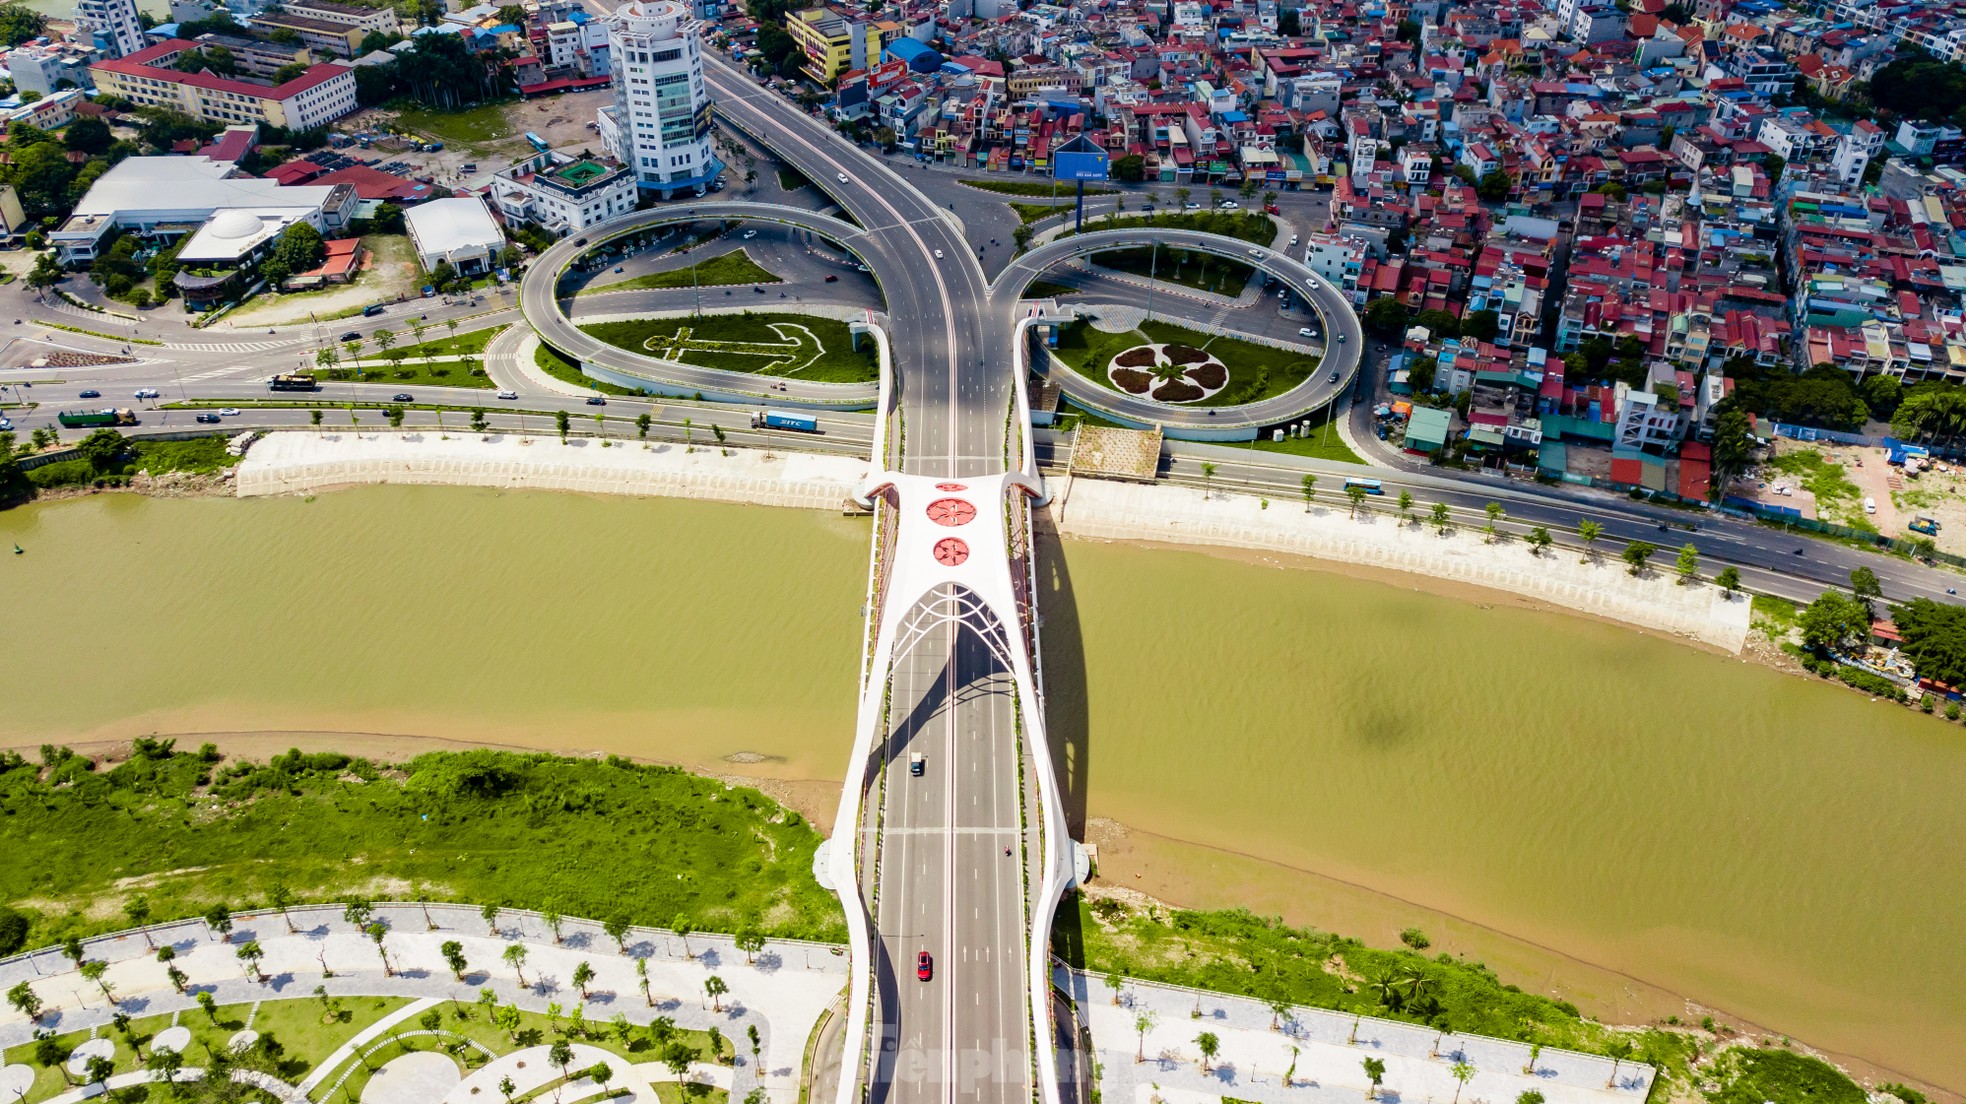 Ấn tượng với vẻ đẹp của hai cây cầu biểu tượng của TP Hải Phòng - Ảnh 6.